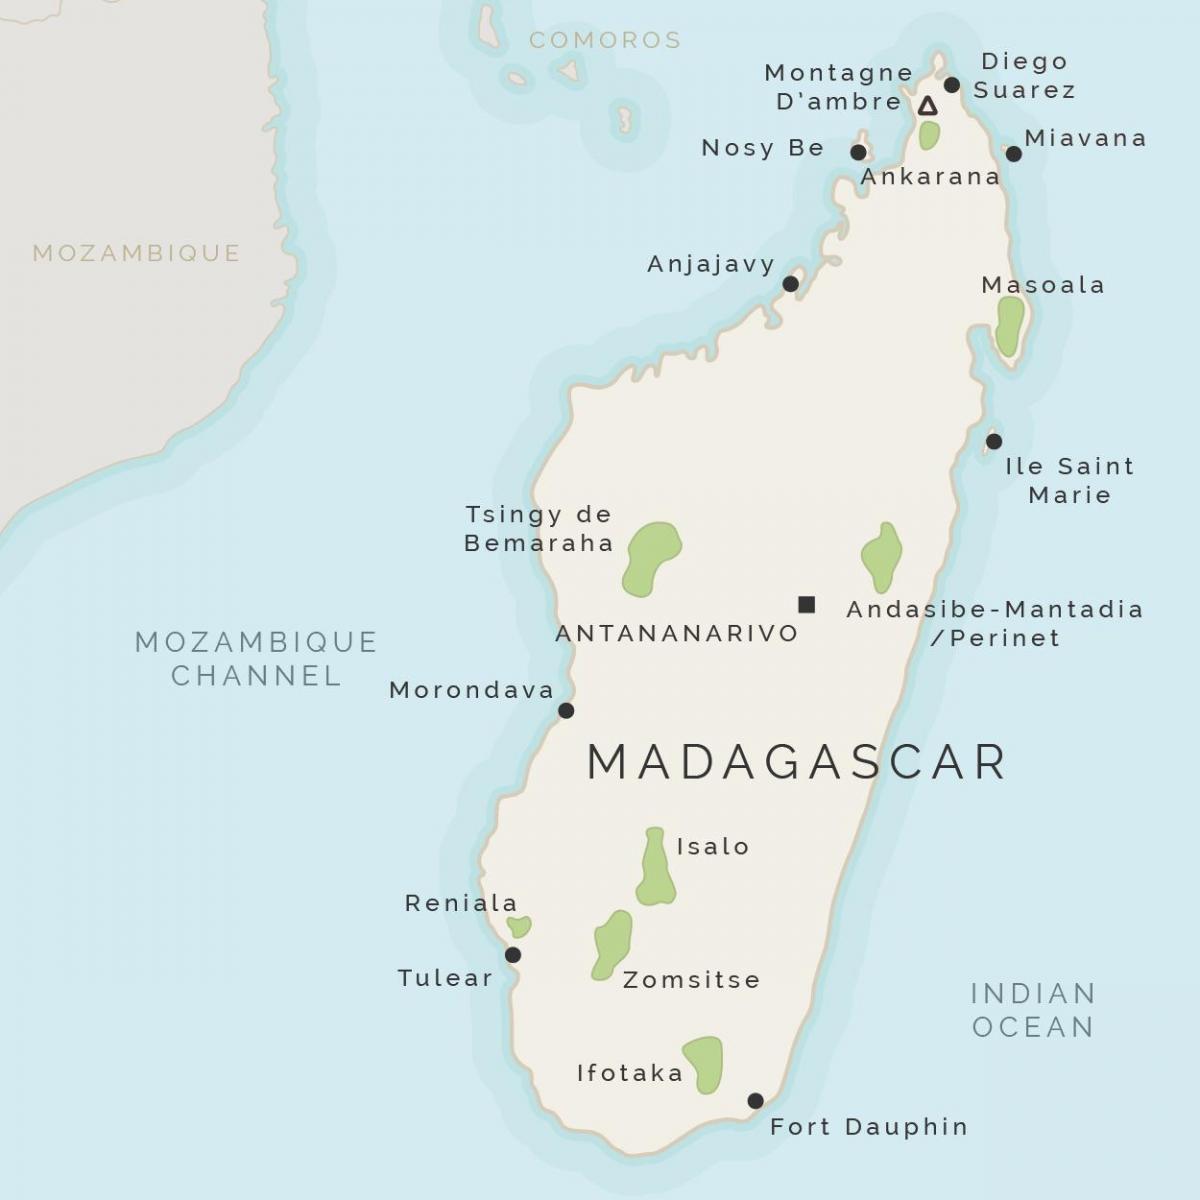 mapa de Madagascar y las islas circundantes